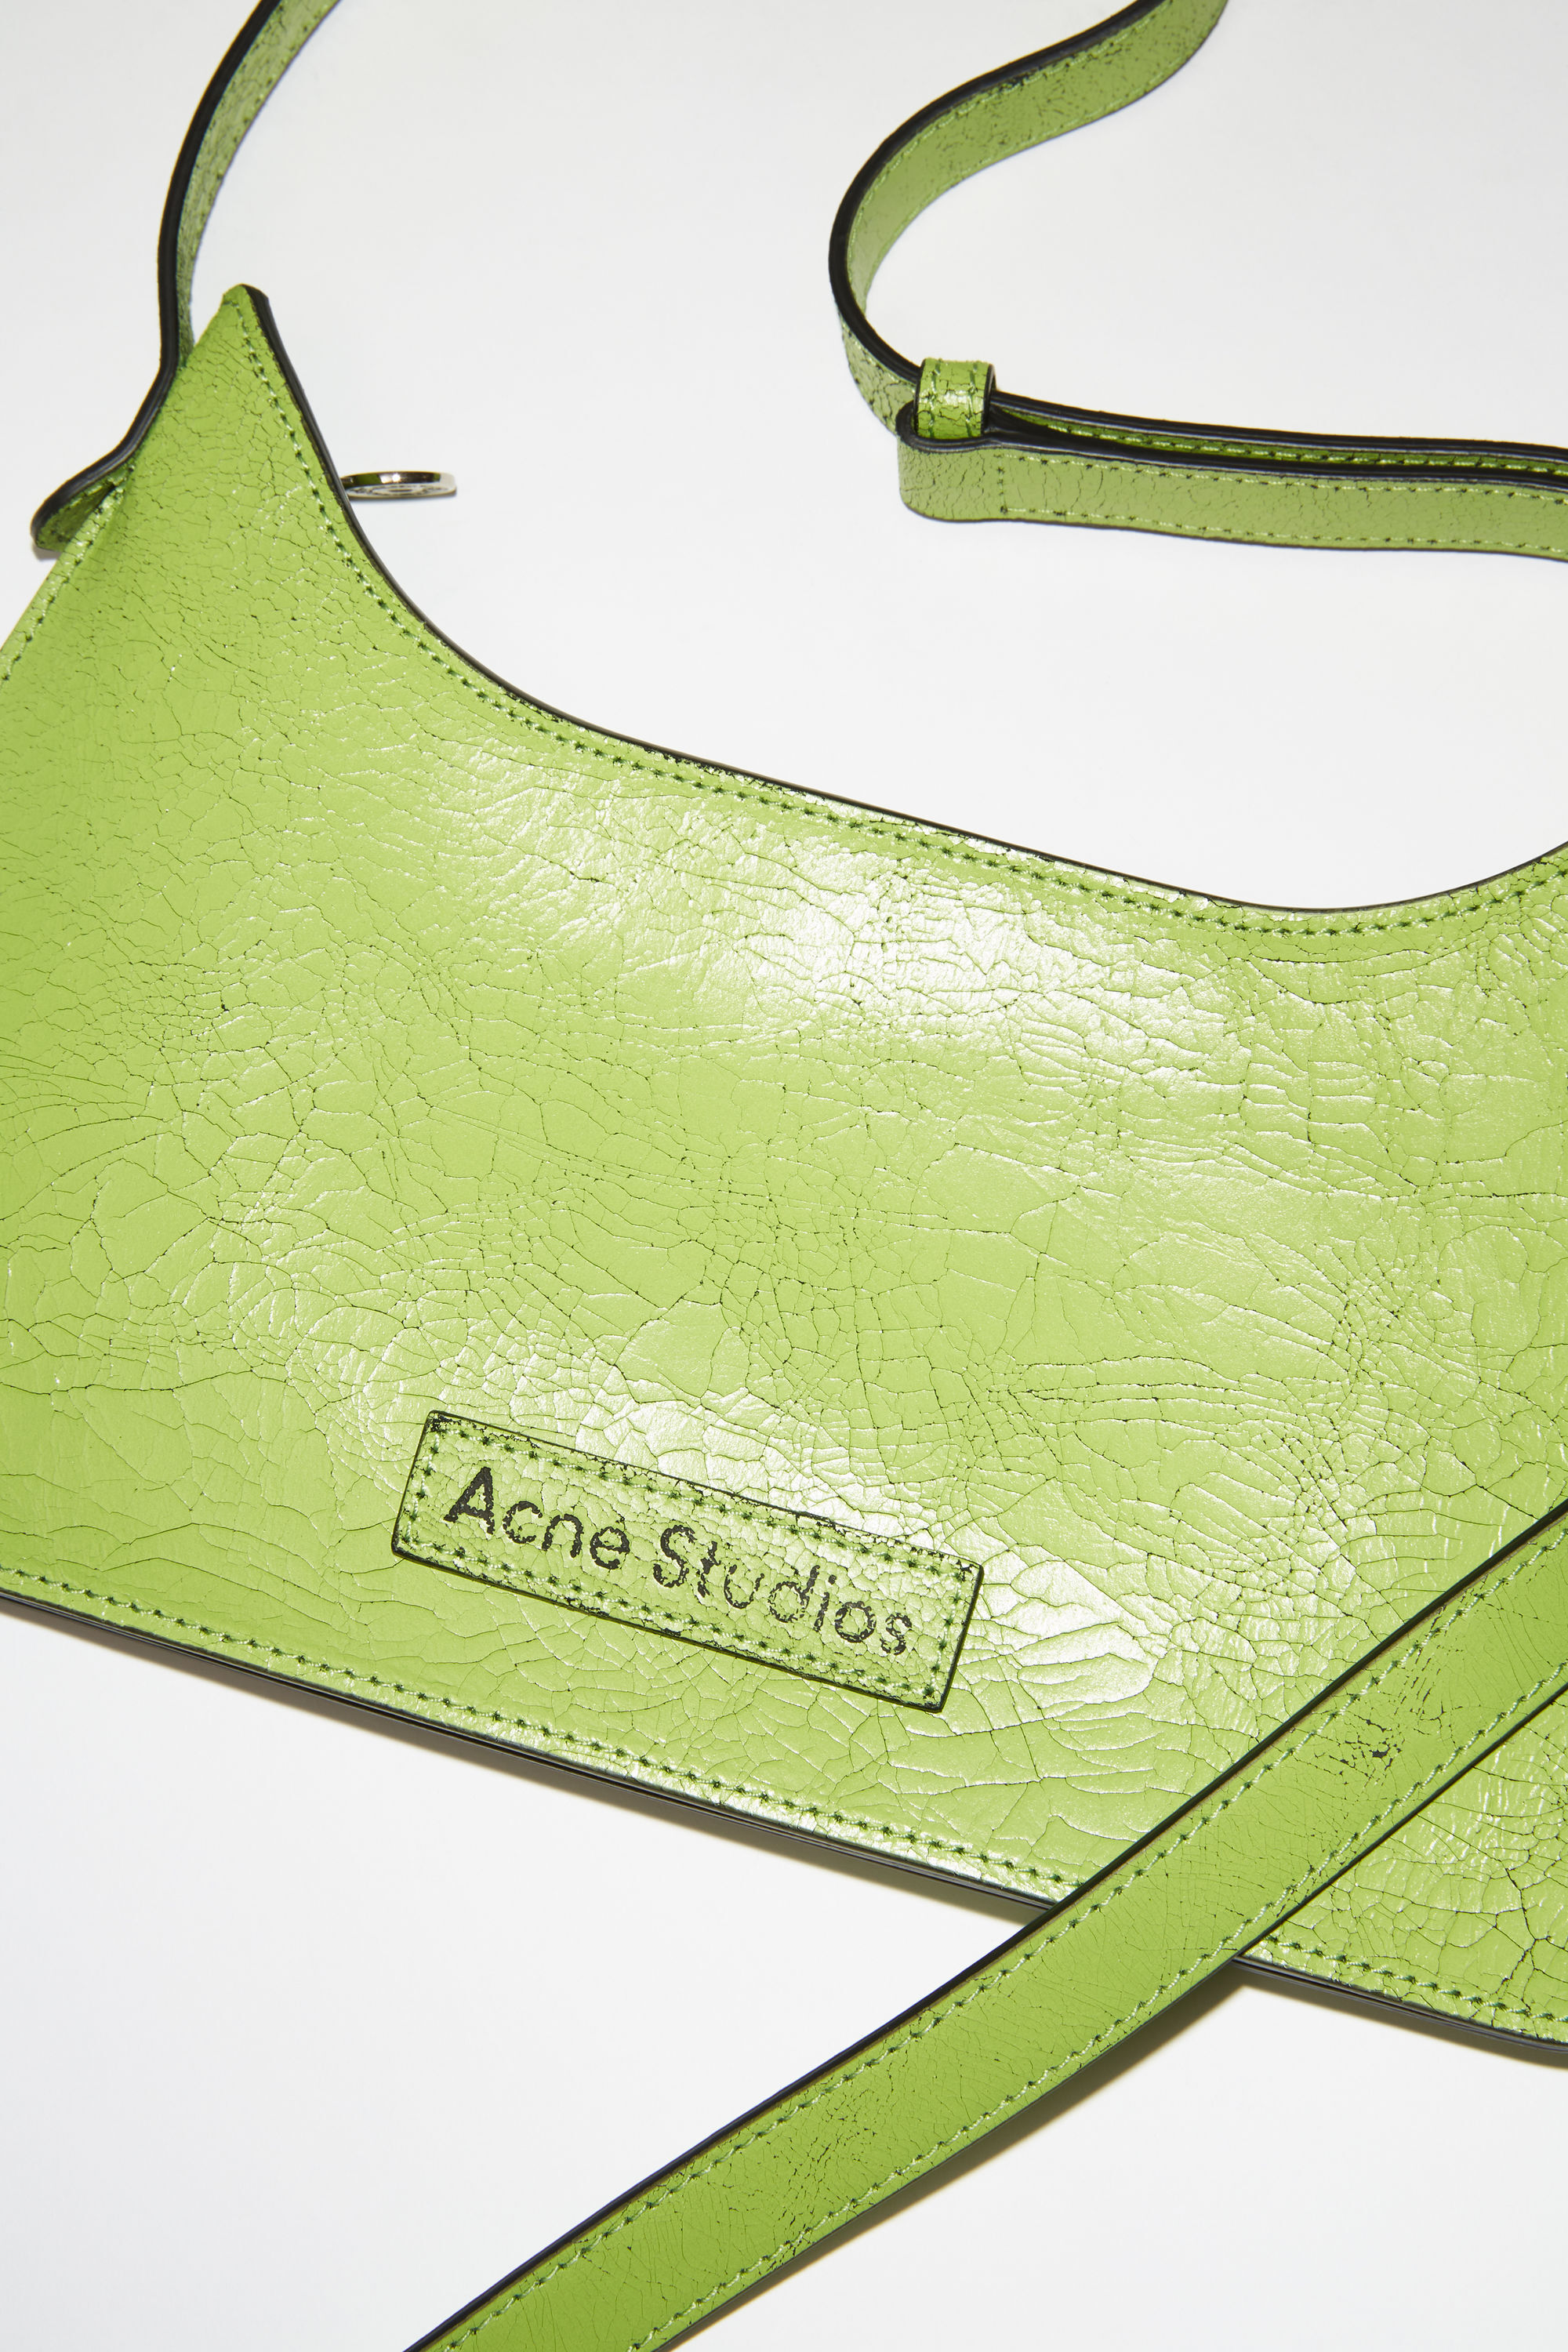 Acne Studios - Platt mini shoulder bag - Lime green